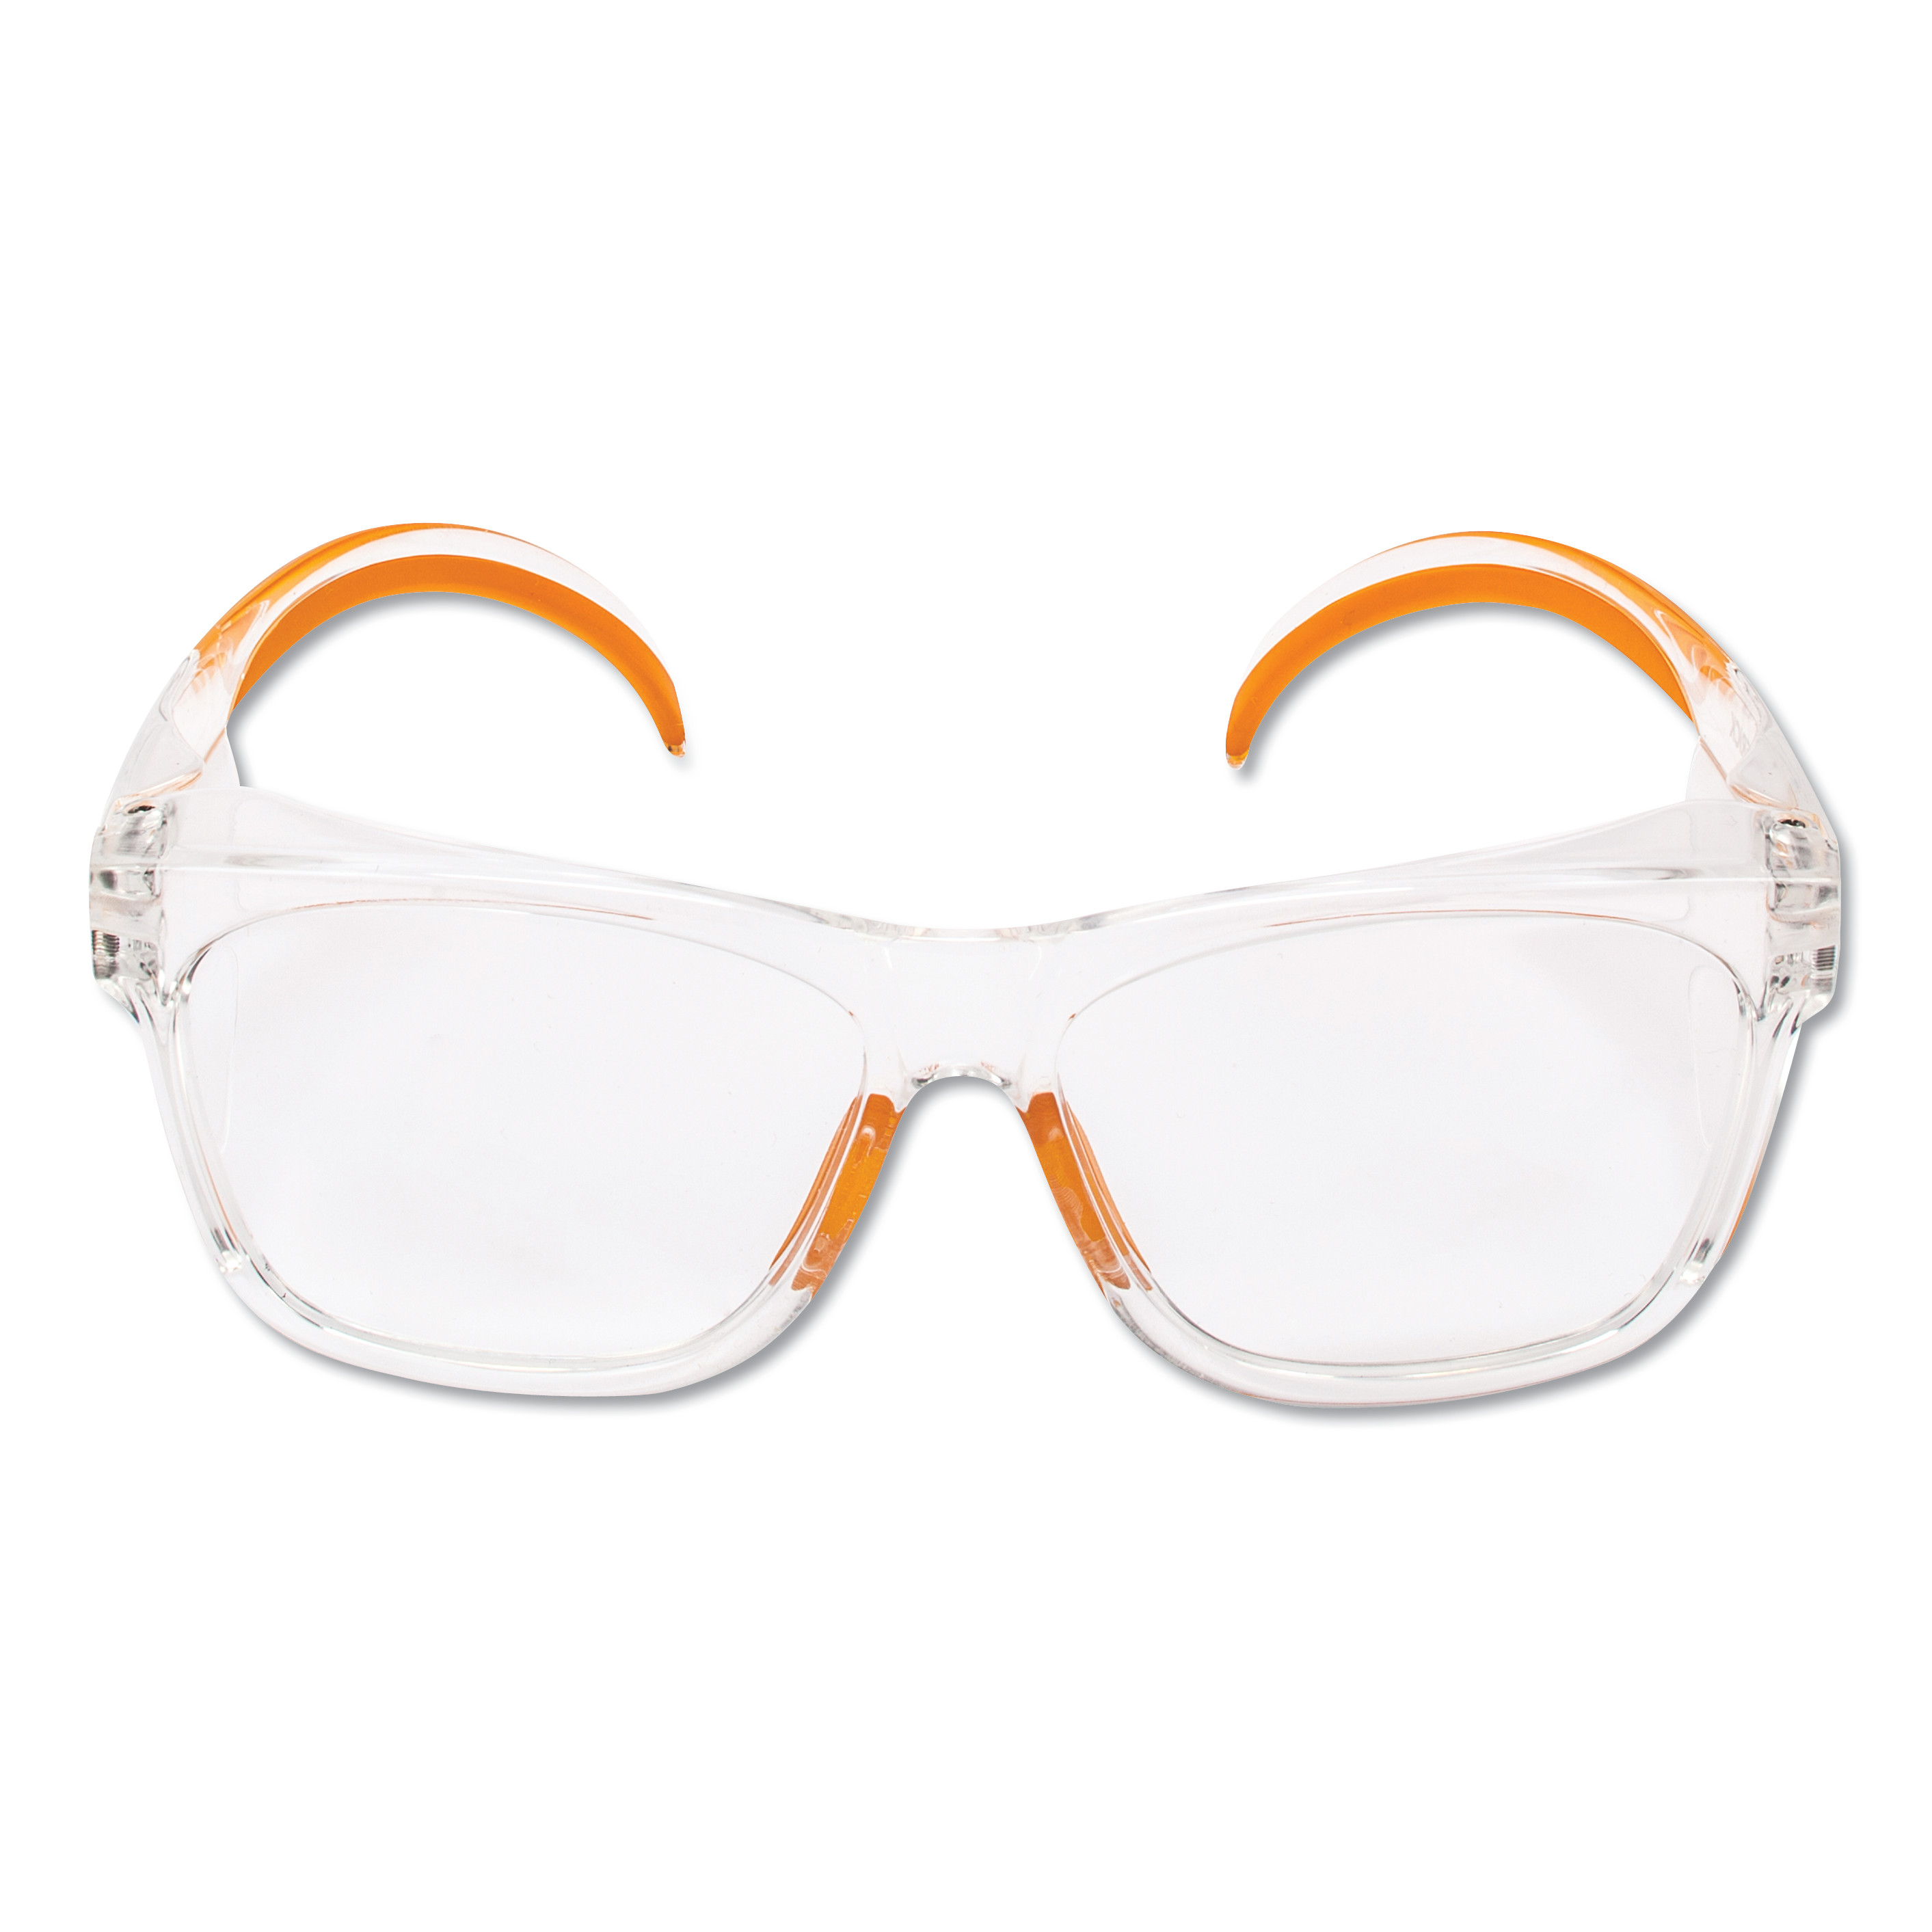  KleenGuard 49301 Maverick Safety Glasses, Clear/Orange, Polycarbonate Frame (KCC49301) 